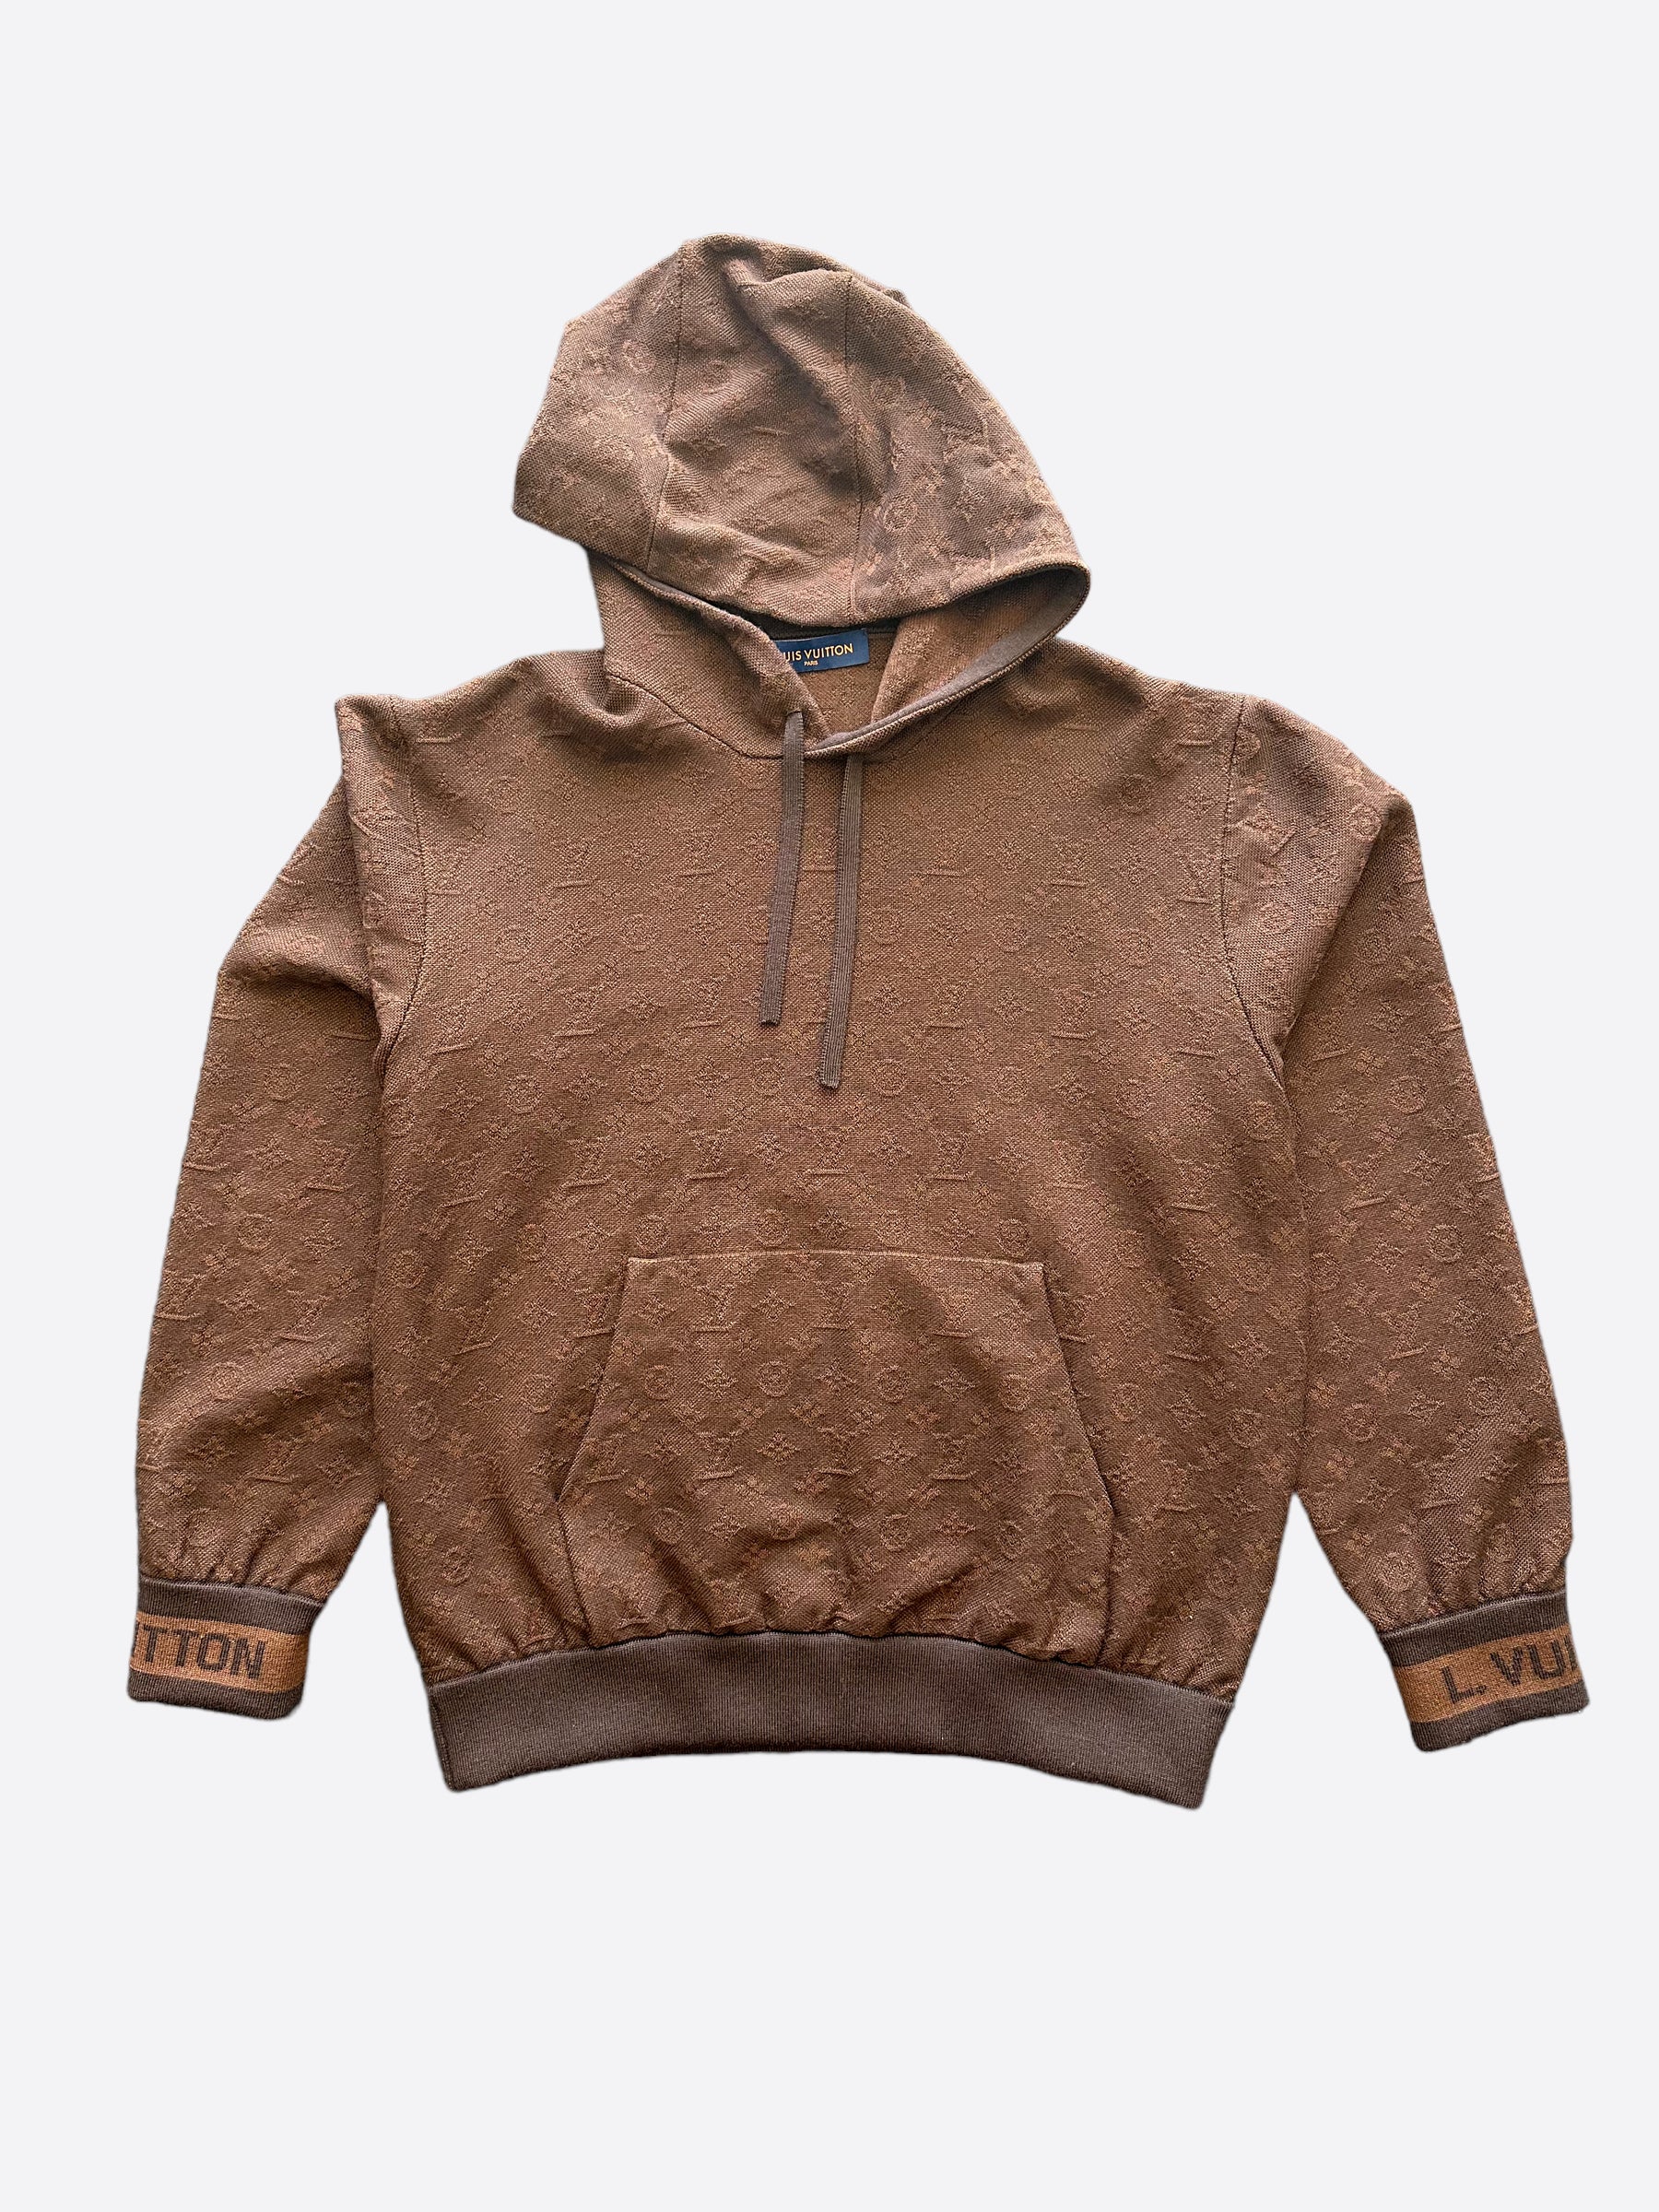 vuitton hoodie brown